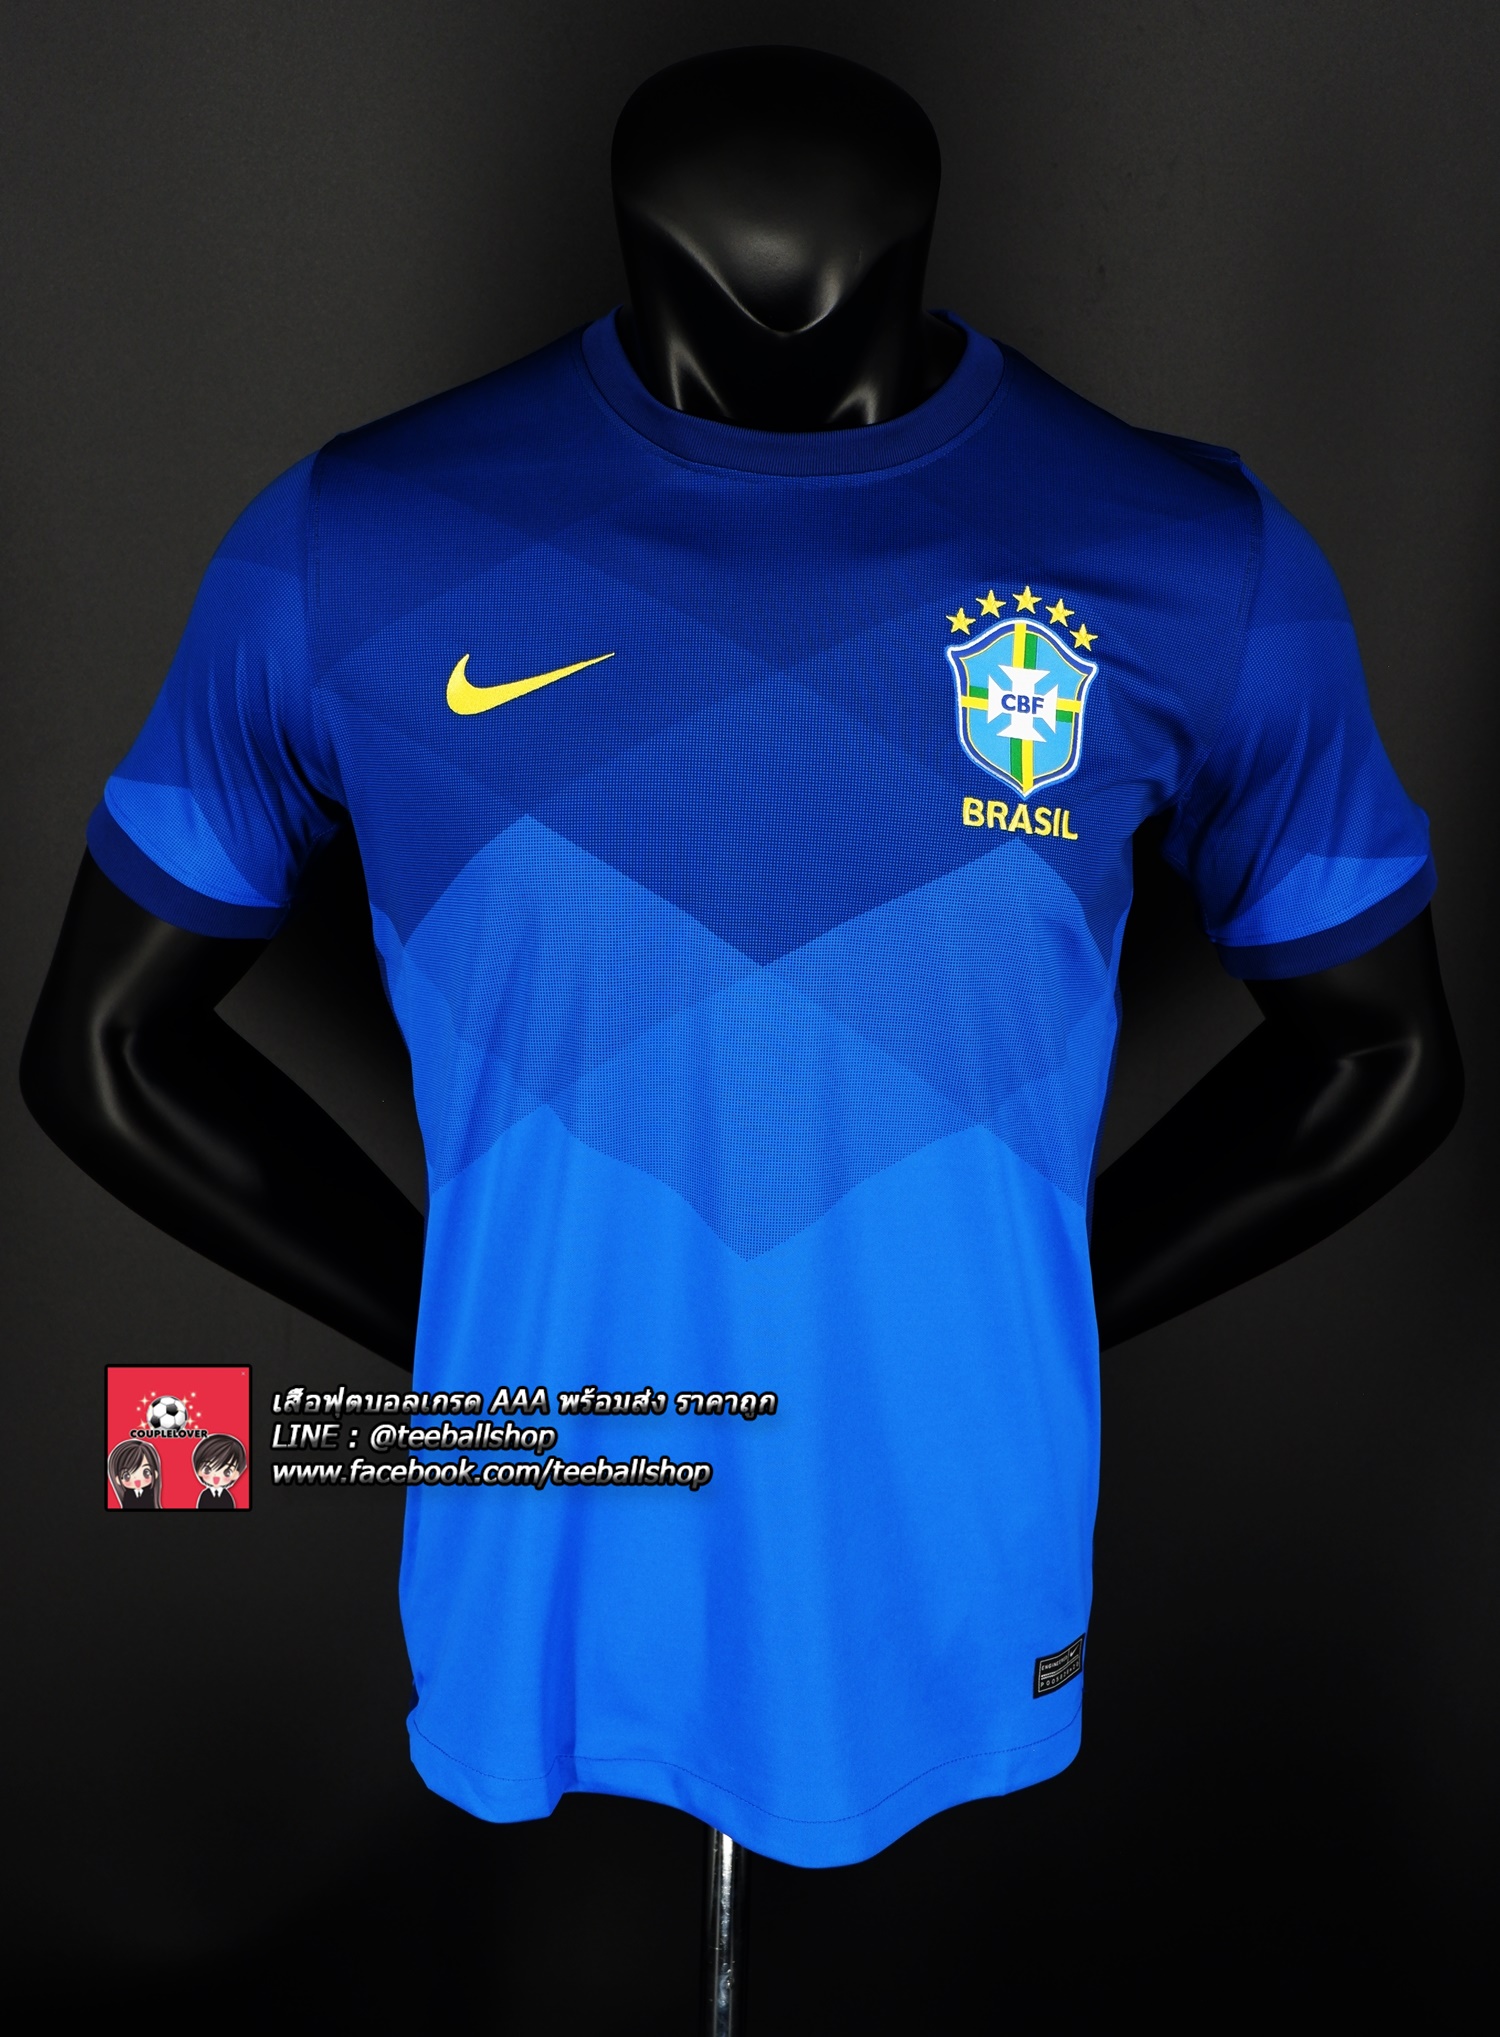 เสื้อฟุตบอลยูโร ทีมชาติ บราซิลชุดเยือนปี 2020/21 Brazil Home Jersey Away 2020/21 (ภาพถ่ายจากของจริง) Top Thai Quality football soccer jerseys shirts AAA